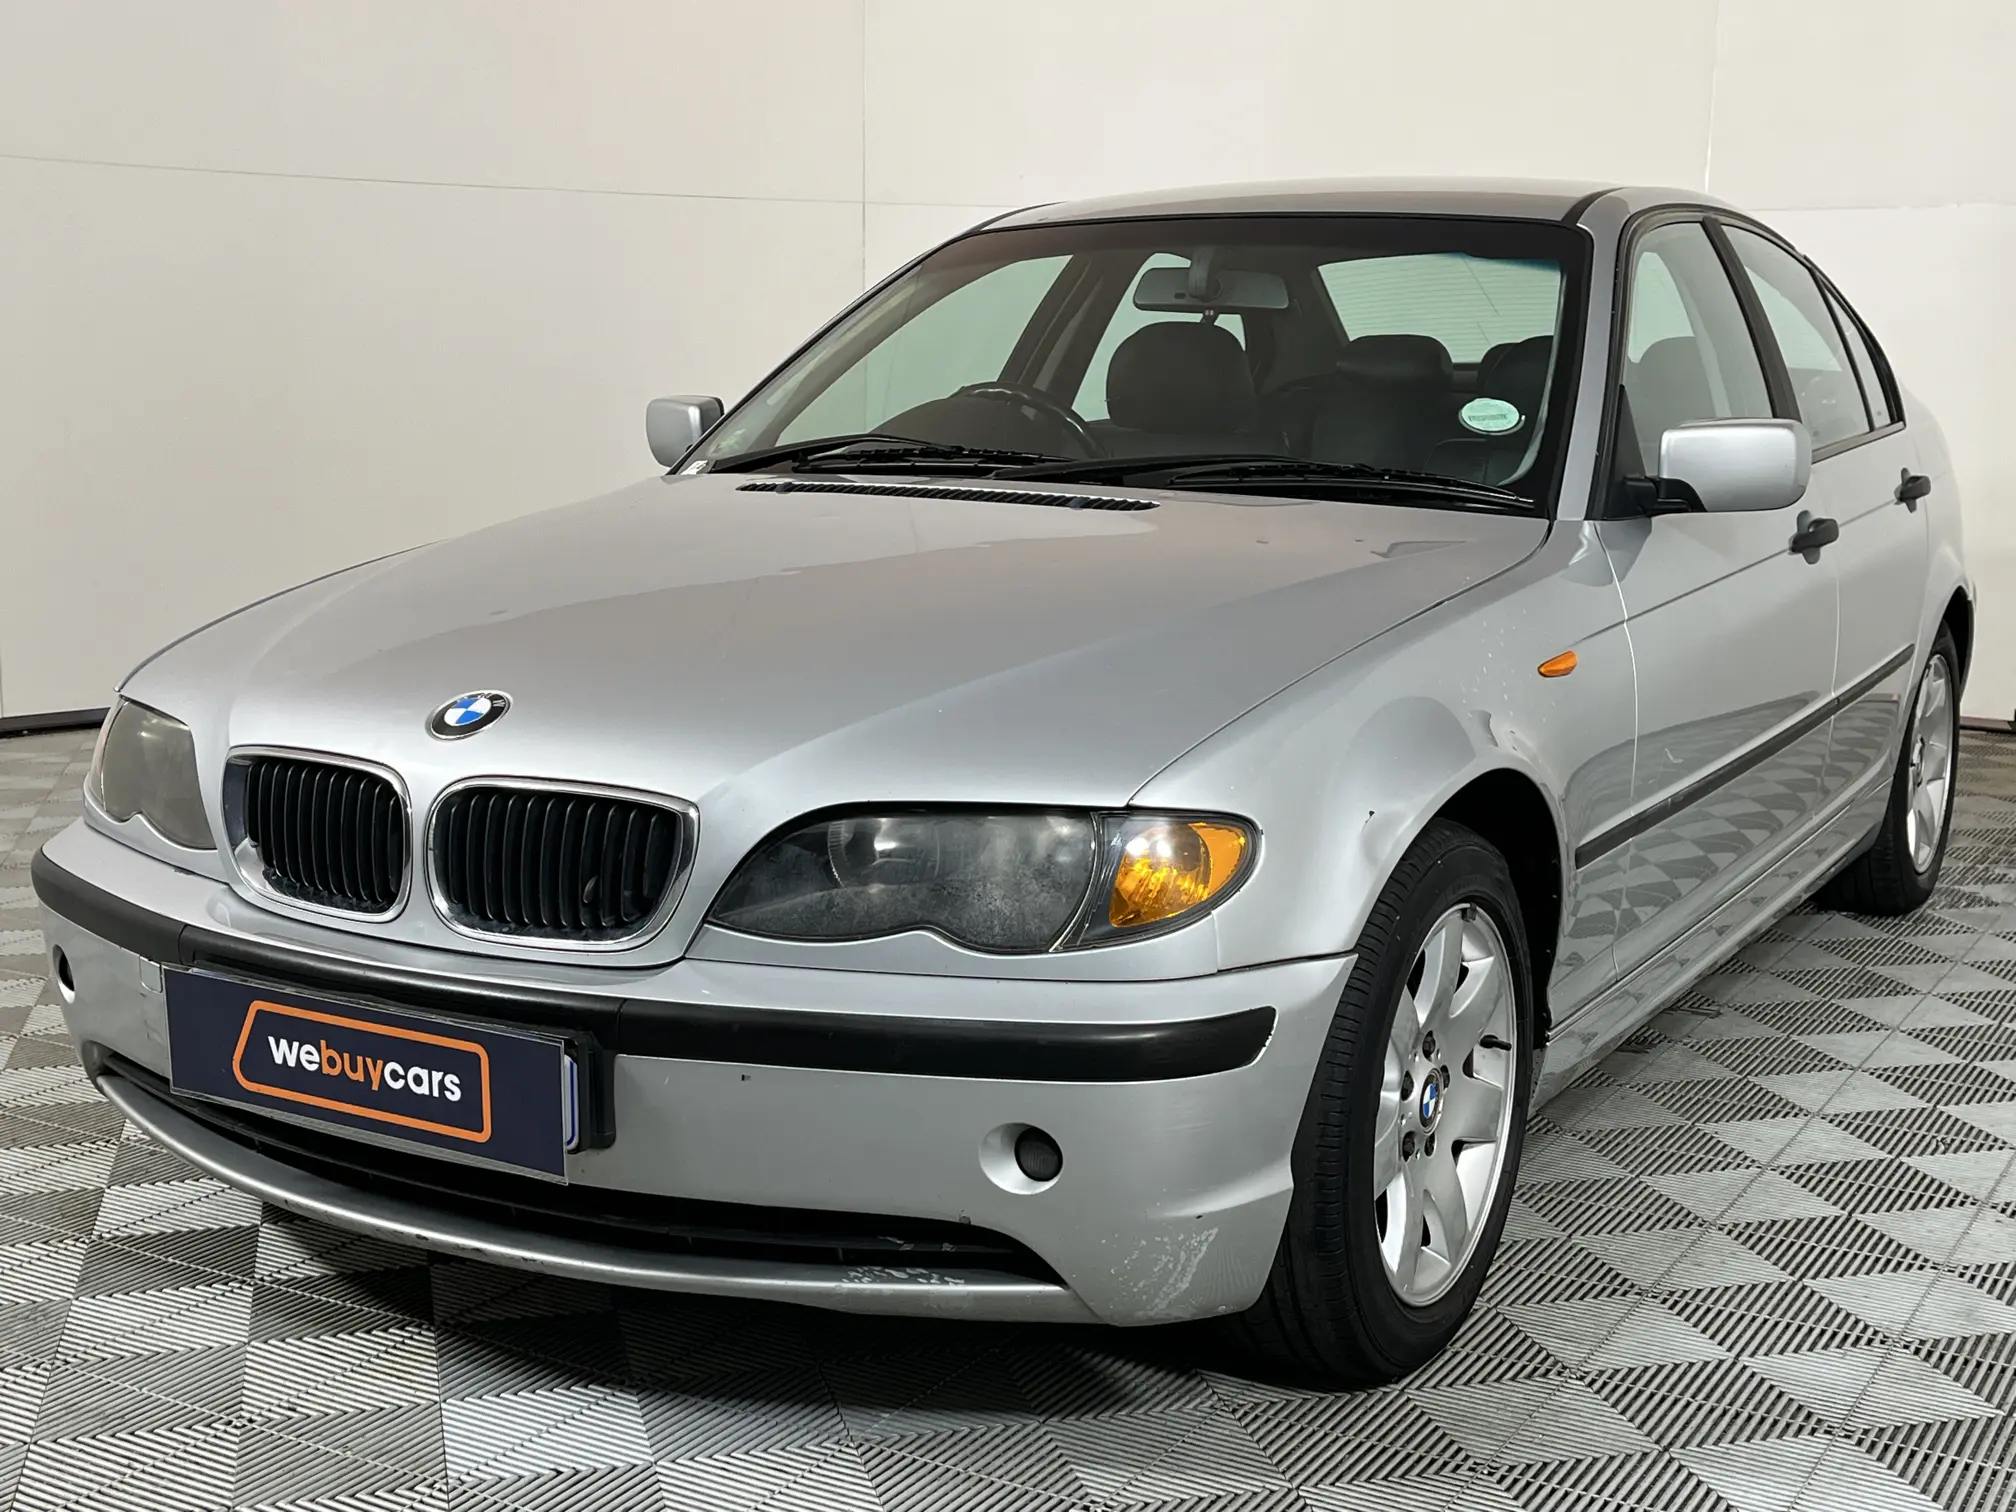 2003 BMW 3 Series 320d (e46)f/l